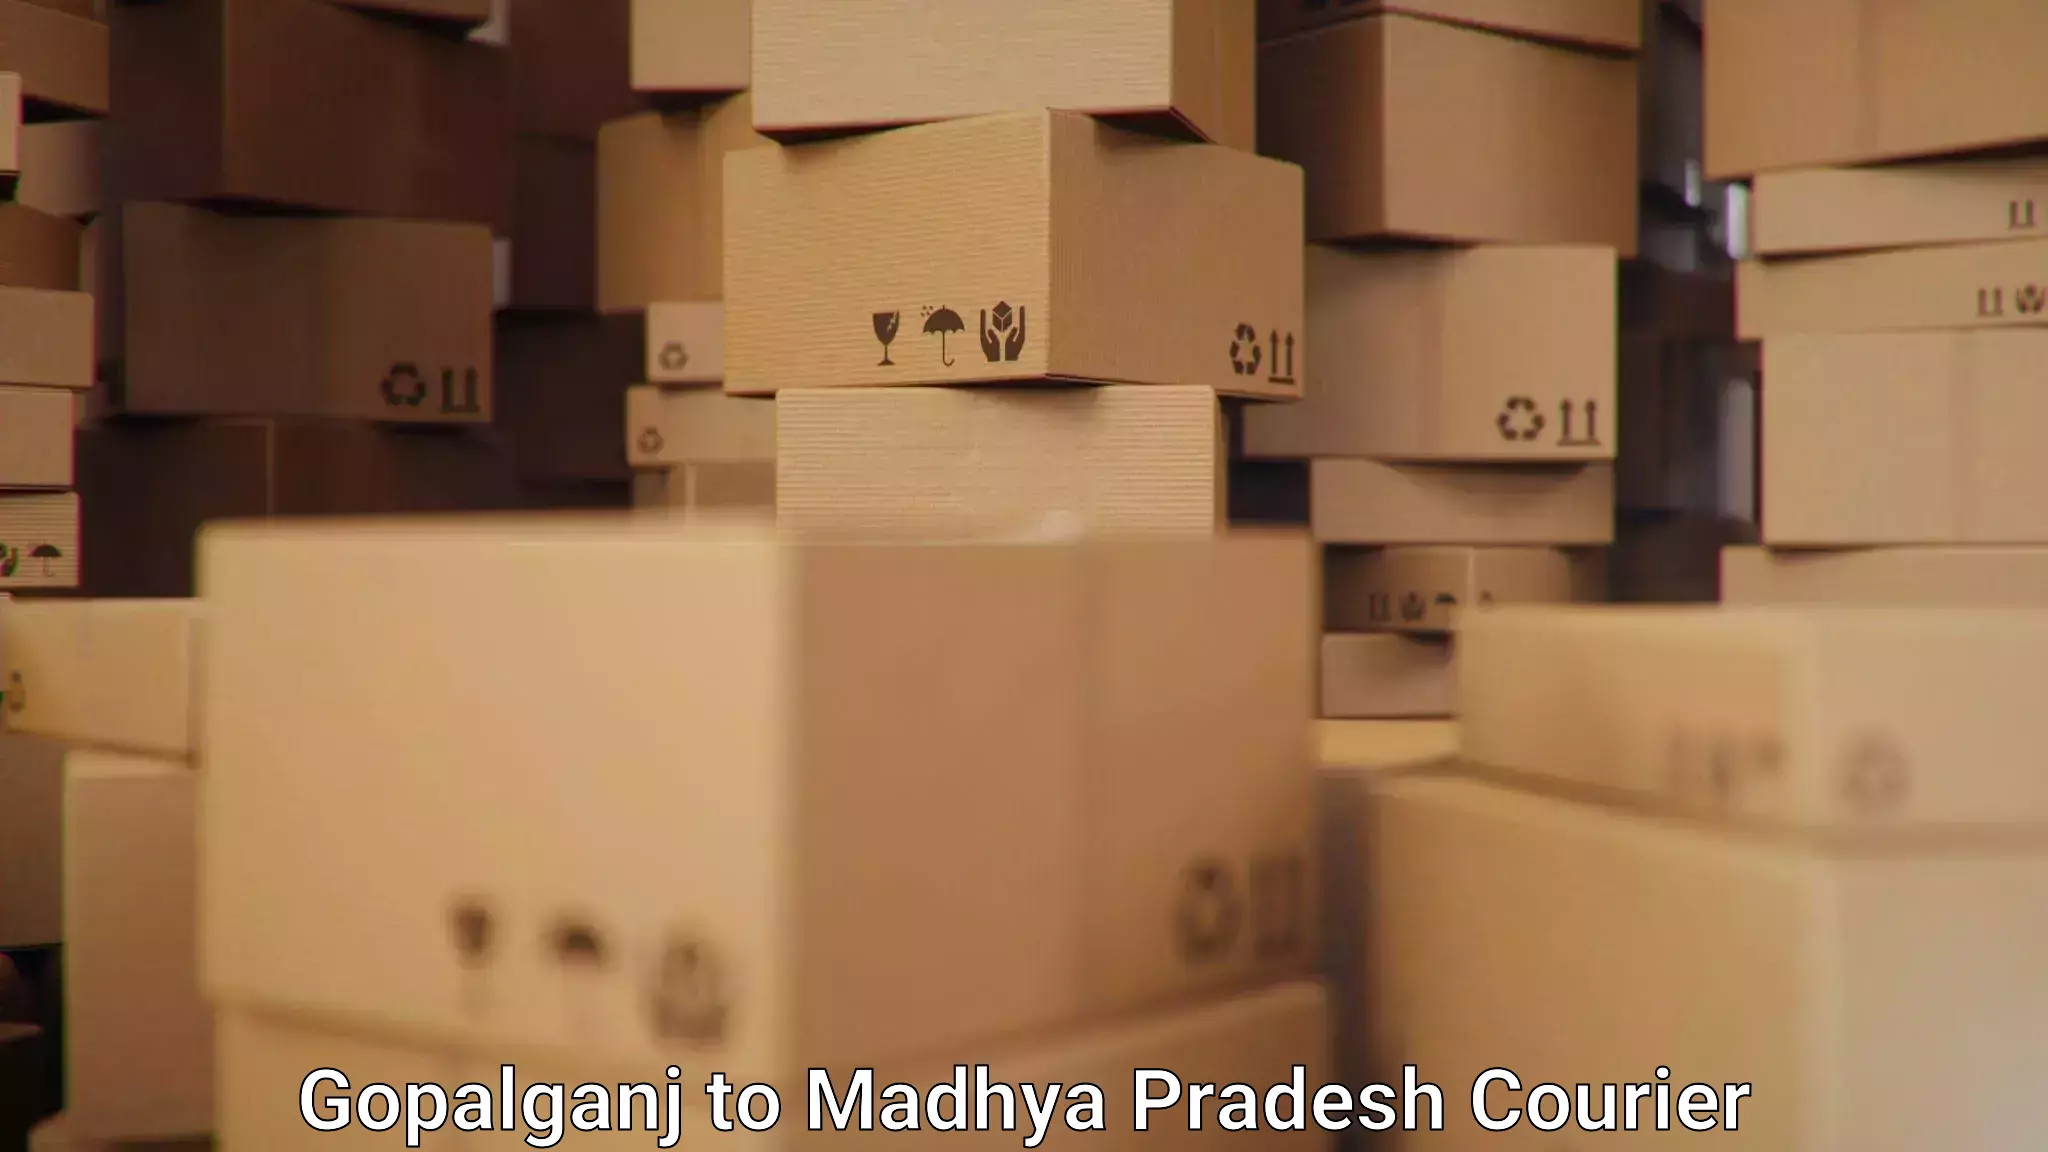 Modern delivery methods Gopalganj to Madhya Pradesh